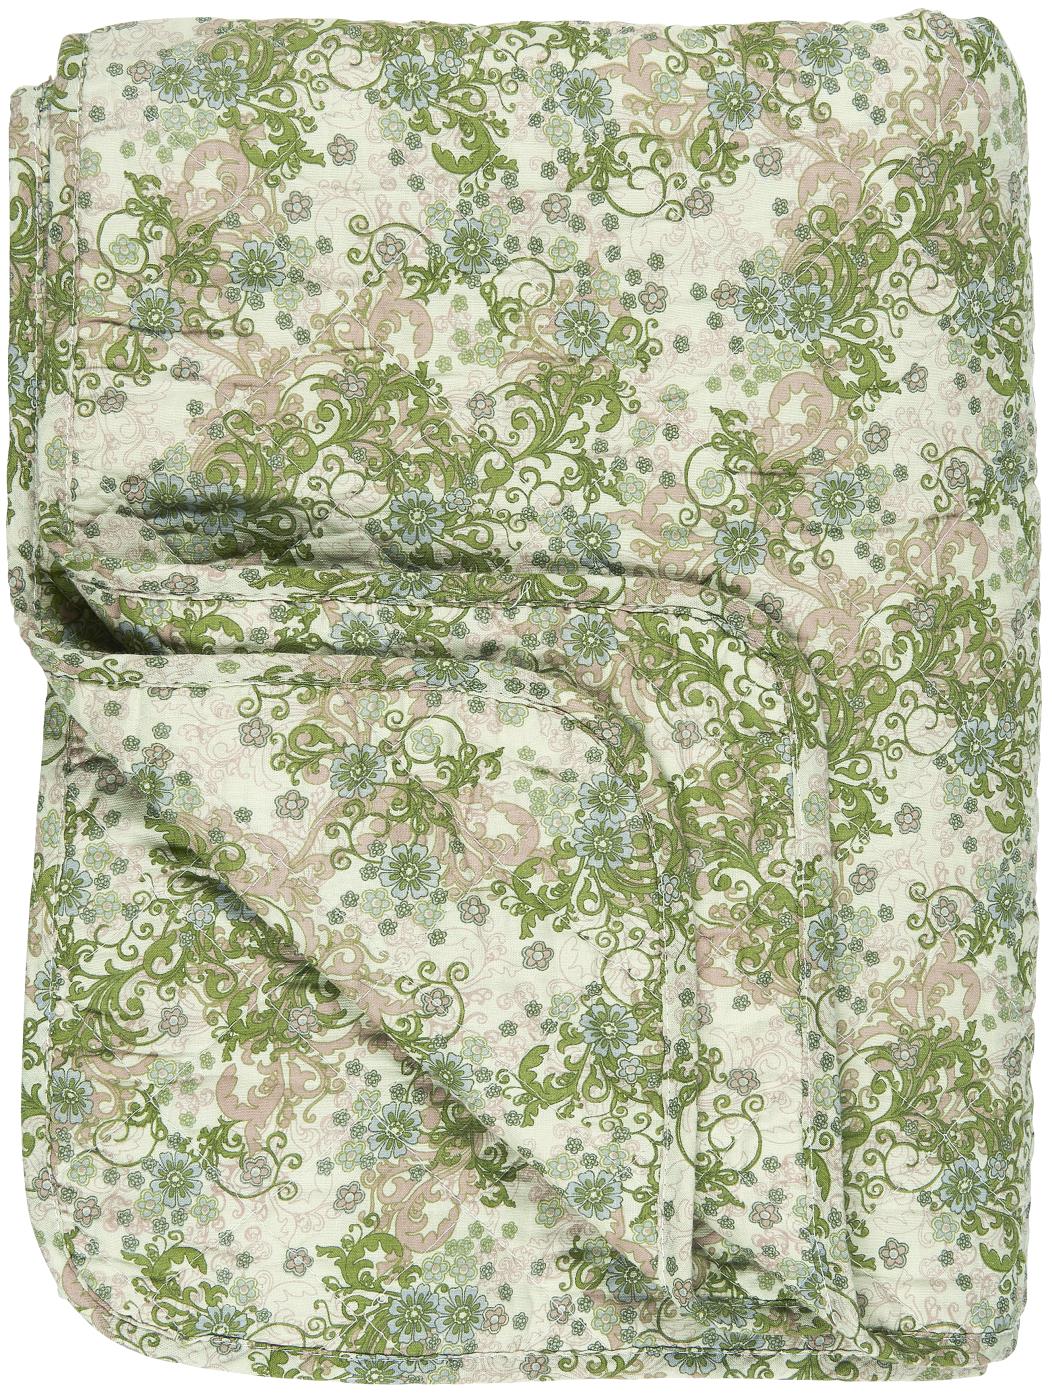 Ib Laursen - light green vintage quilt